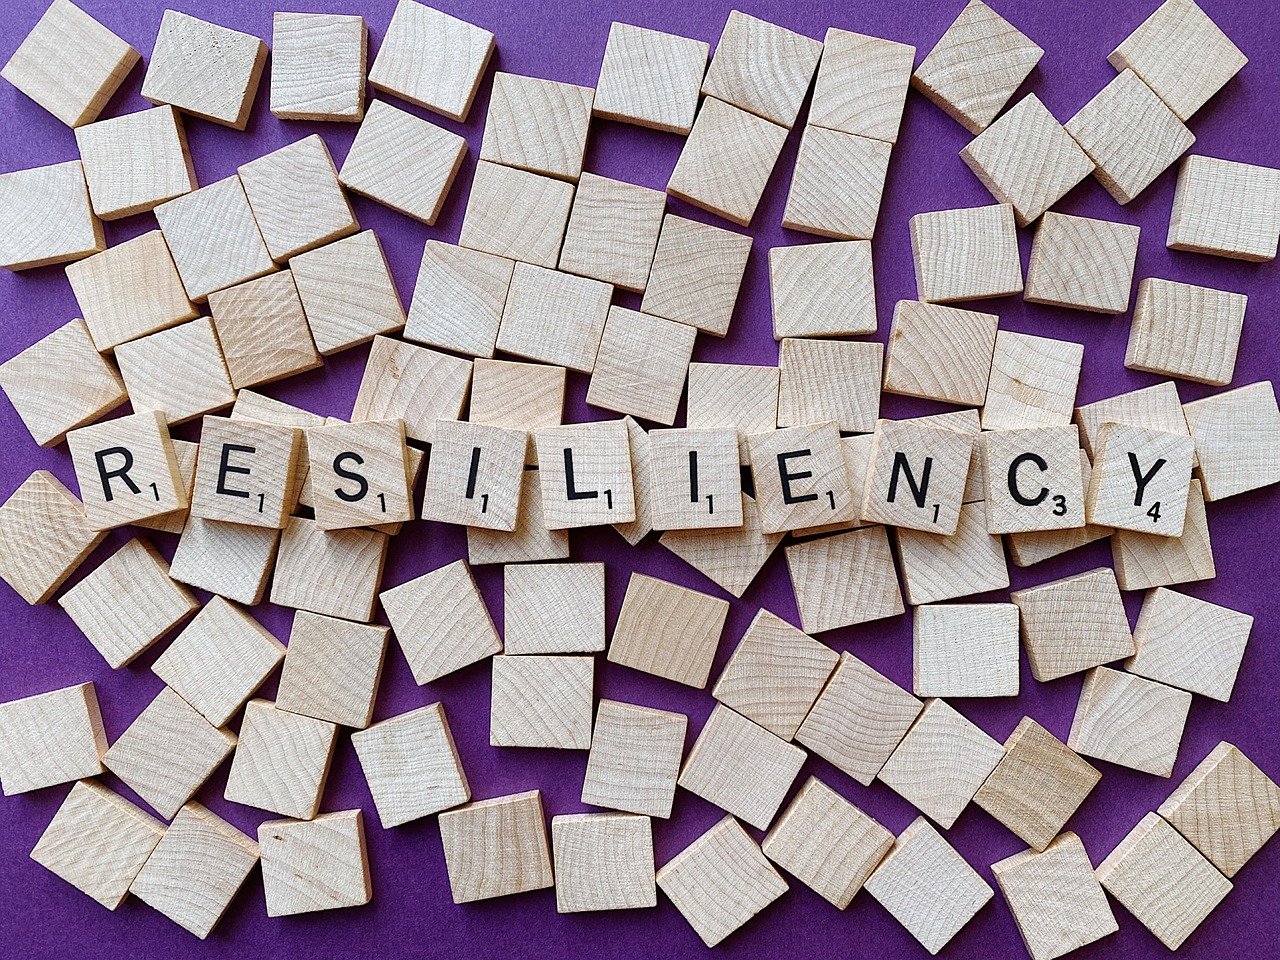 Resilienza, la tua dote più importante